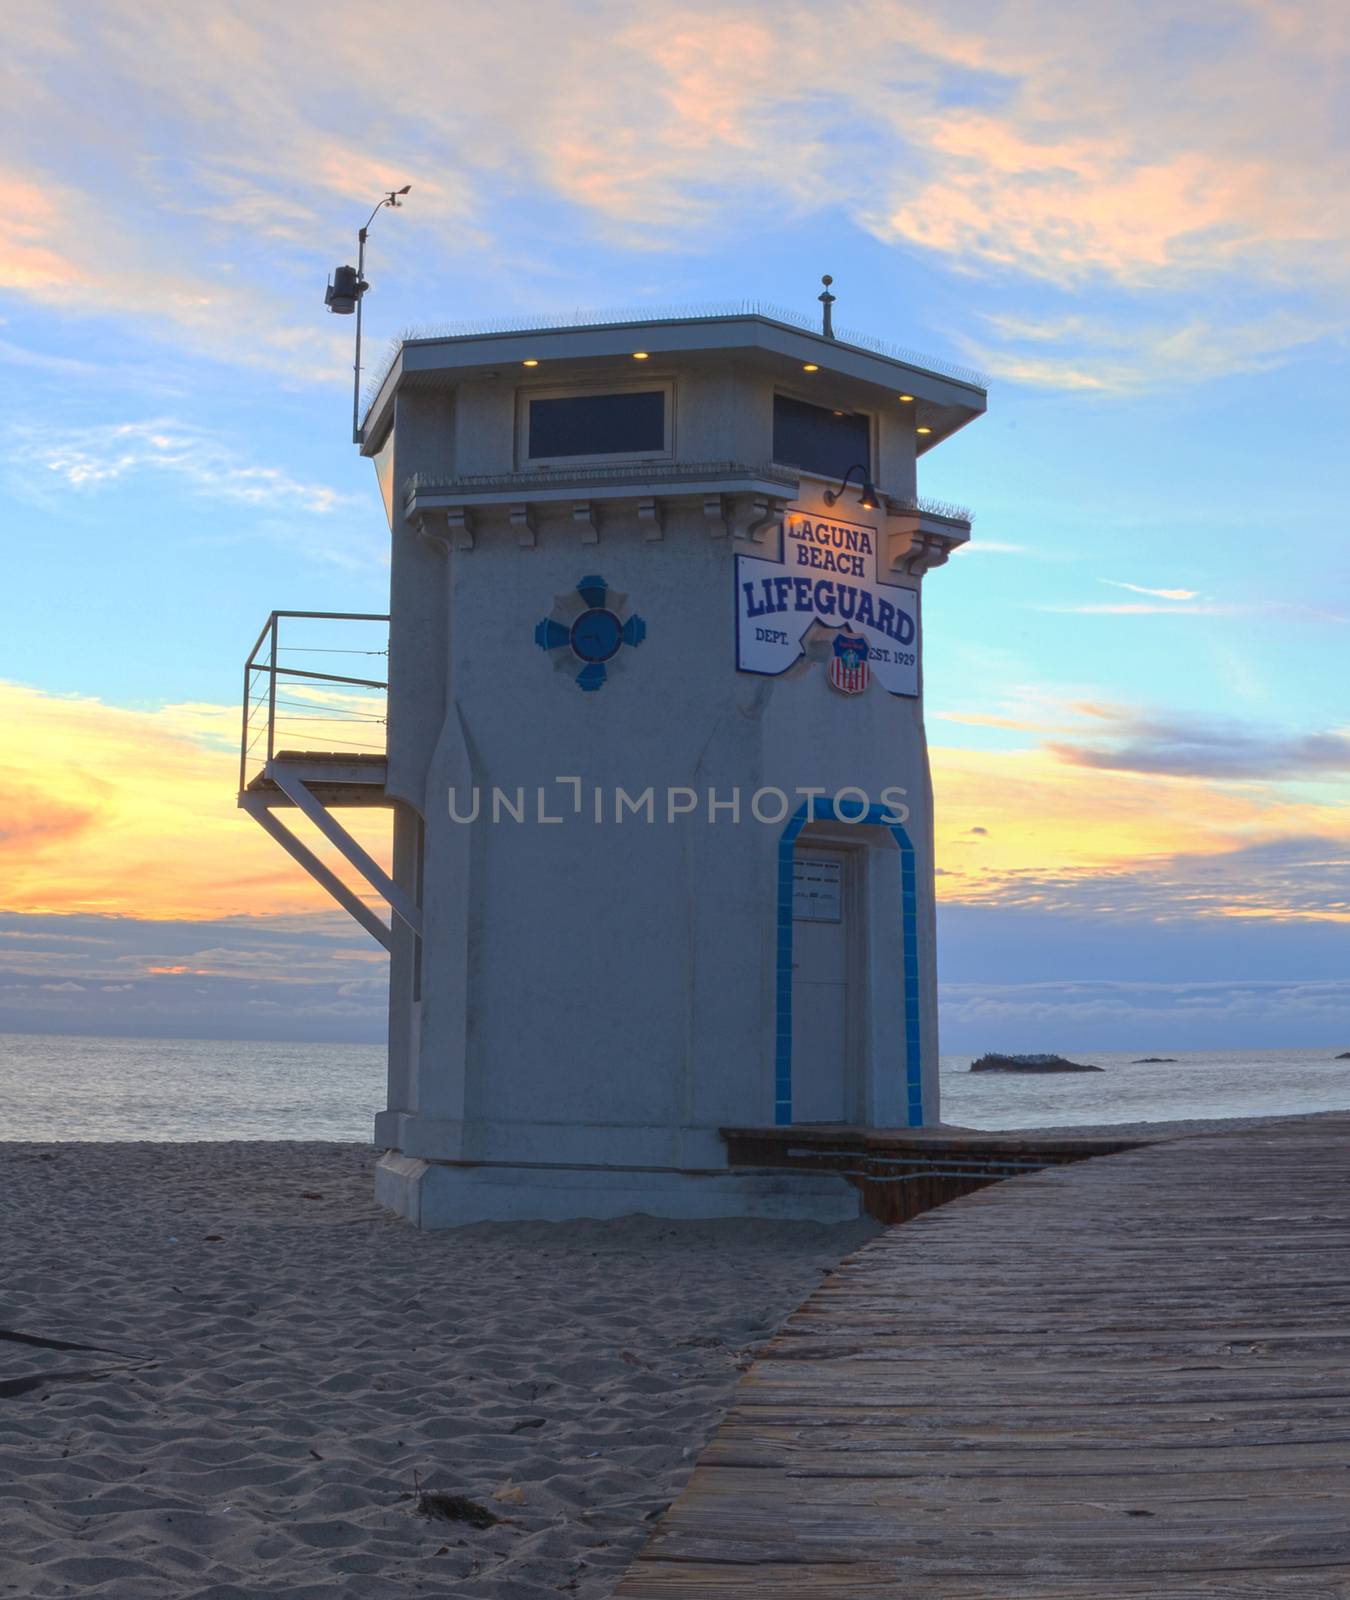 Lifeguard on boardwalk at Main beach in Laguna Beach, Southern California at sunset